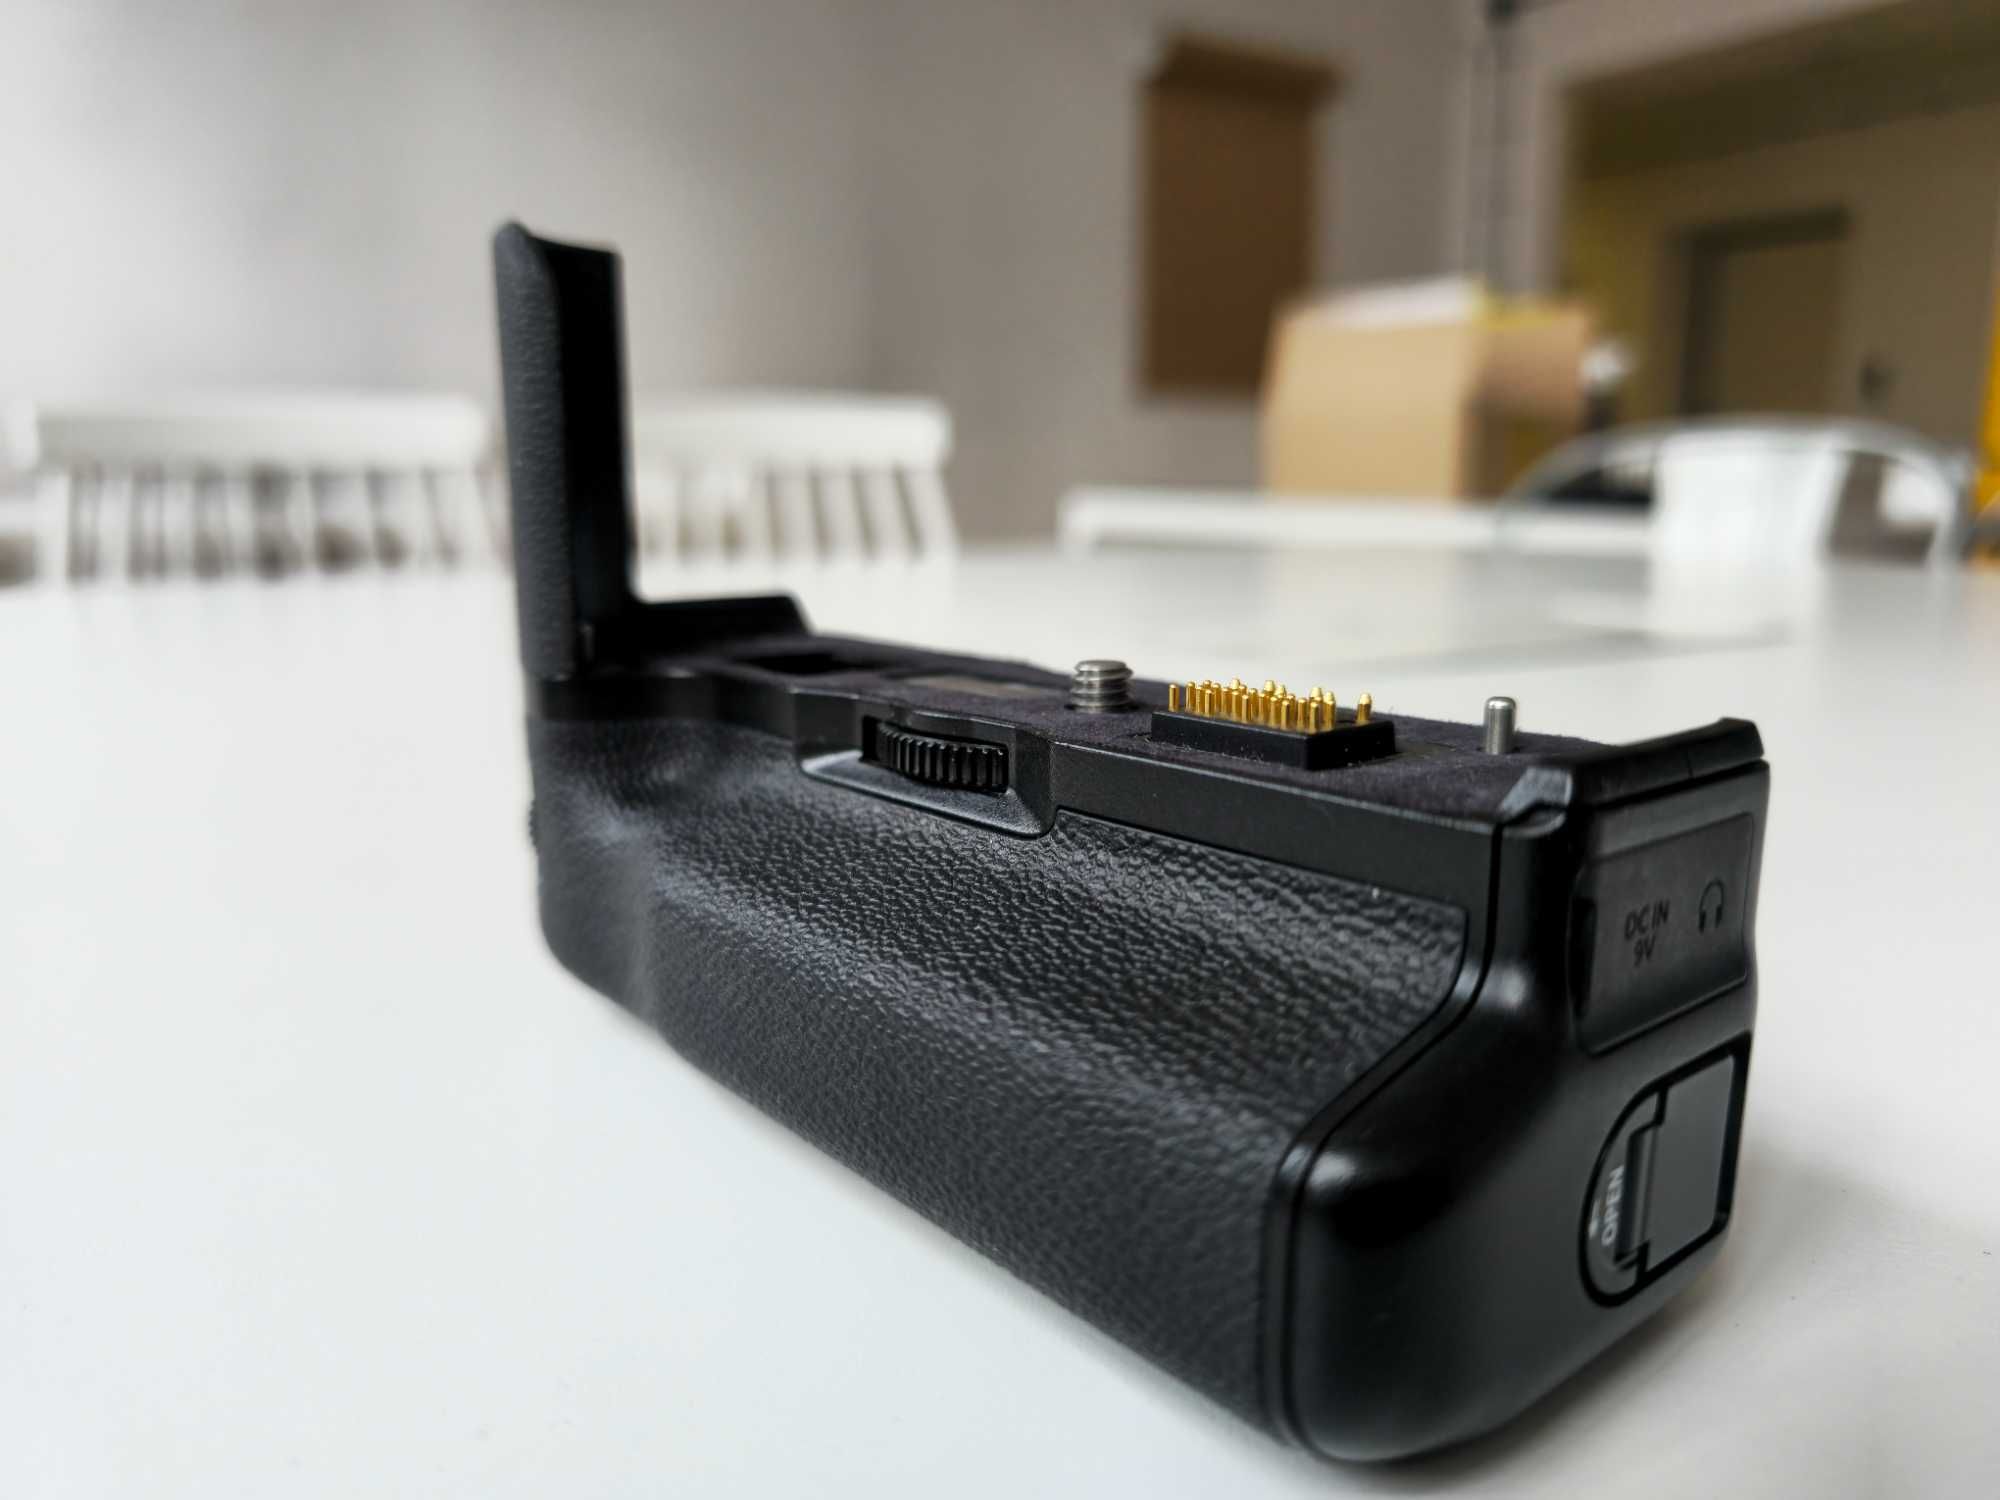 Batterypack do Fujifilm X-T2 wraz z akumulatorami